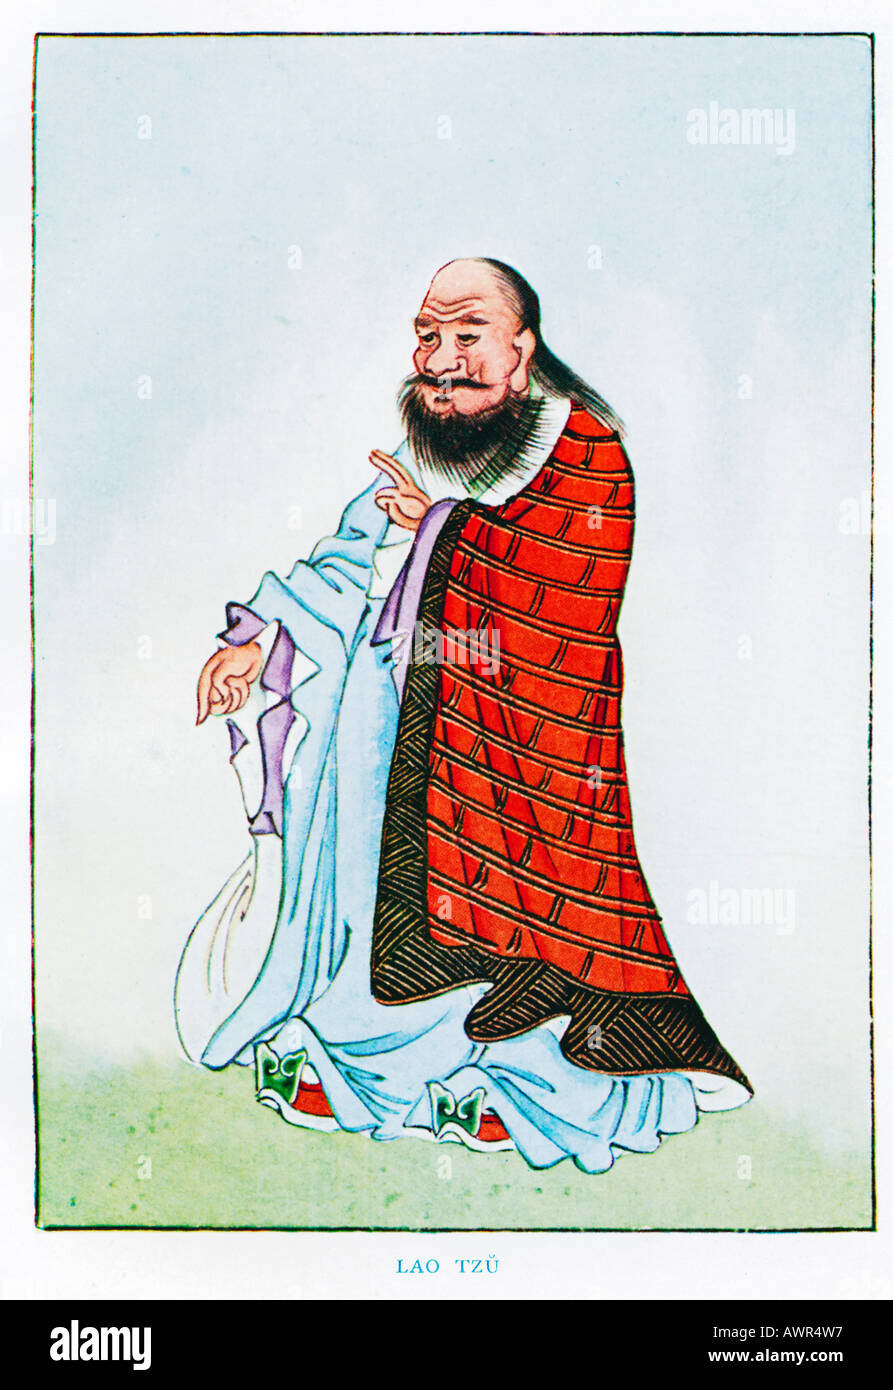 Lao Tseu 1920 illustration par un artiste chinois à partir d'un livre sur les mythes et légendes de Chine Banque D'Images